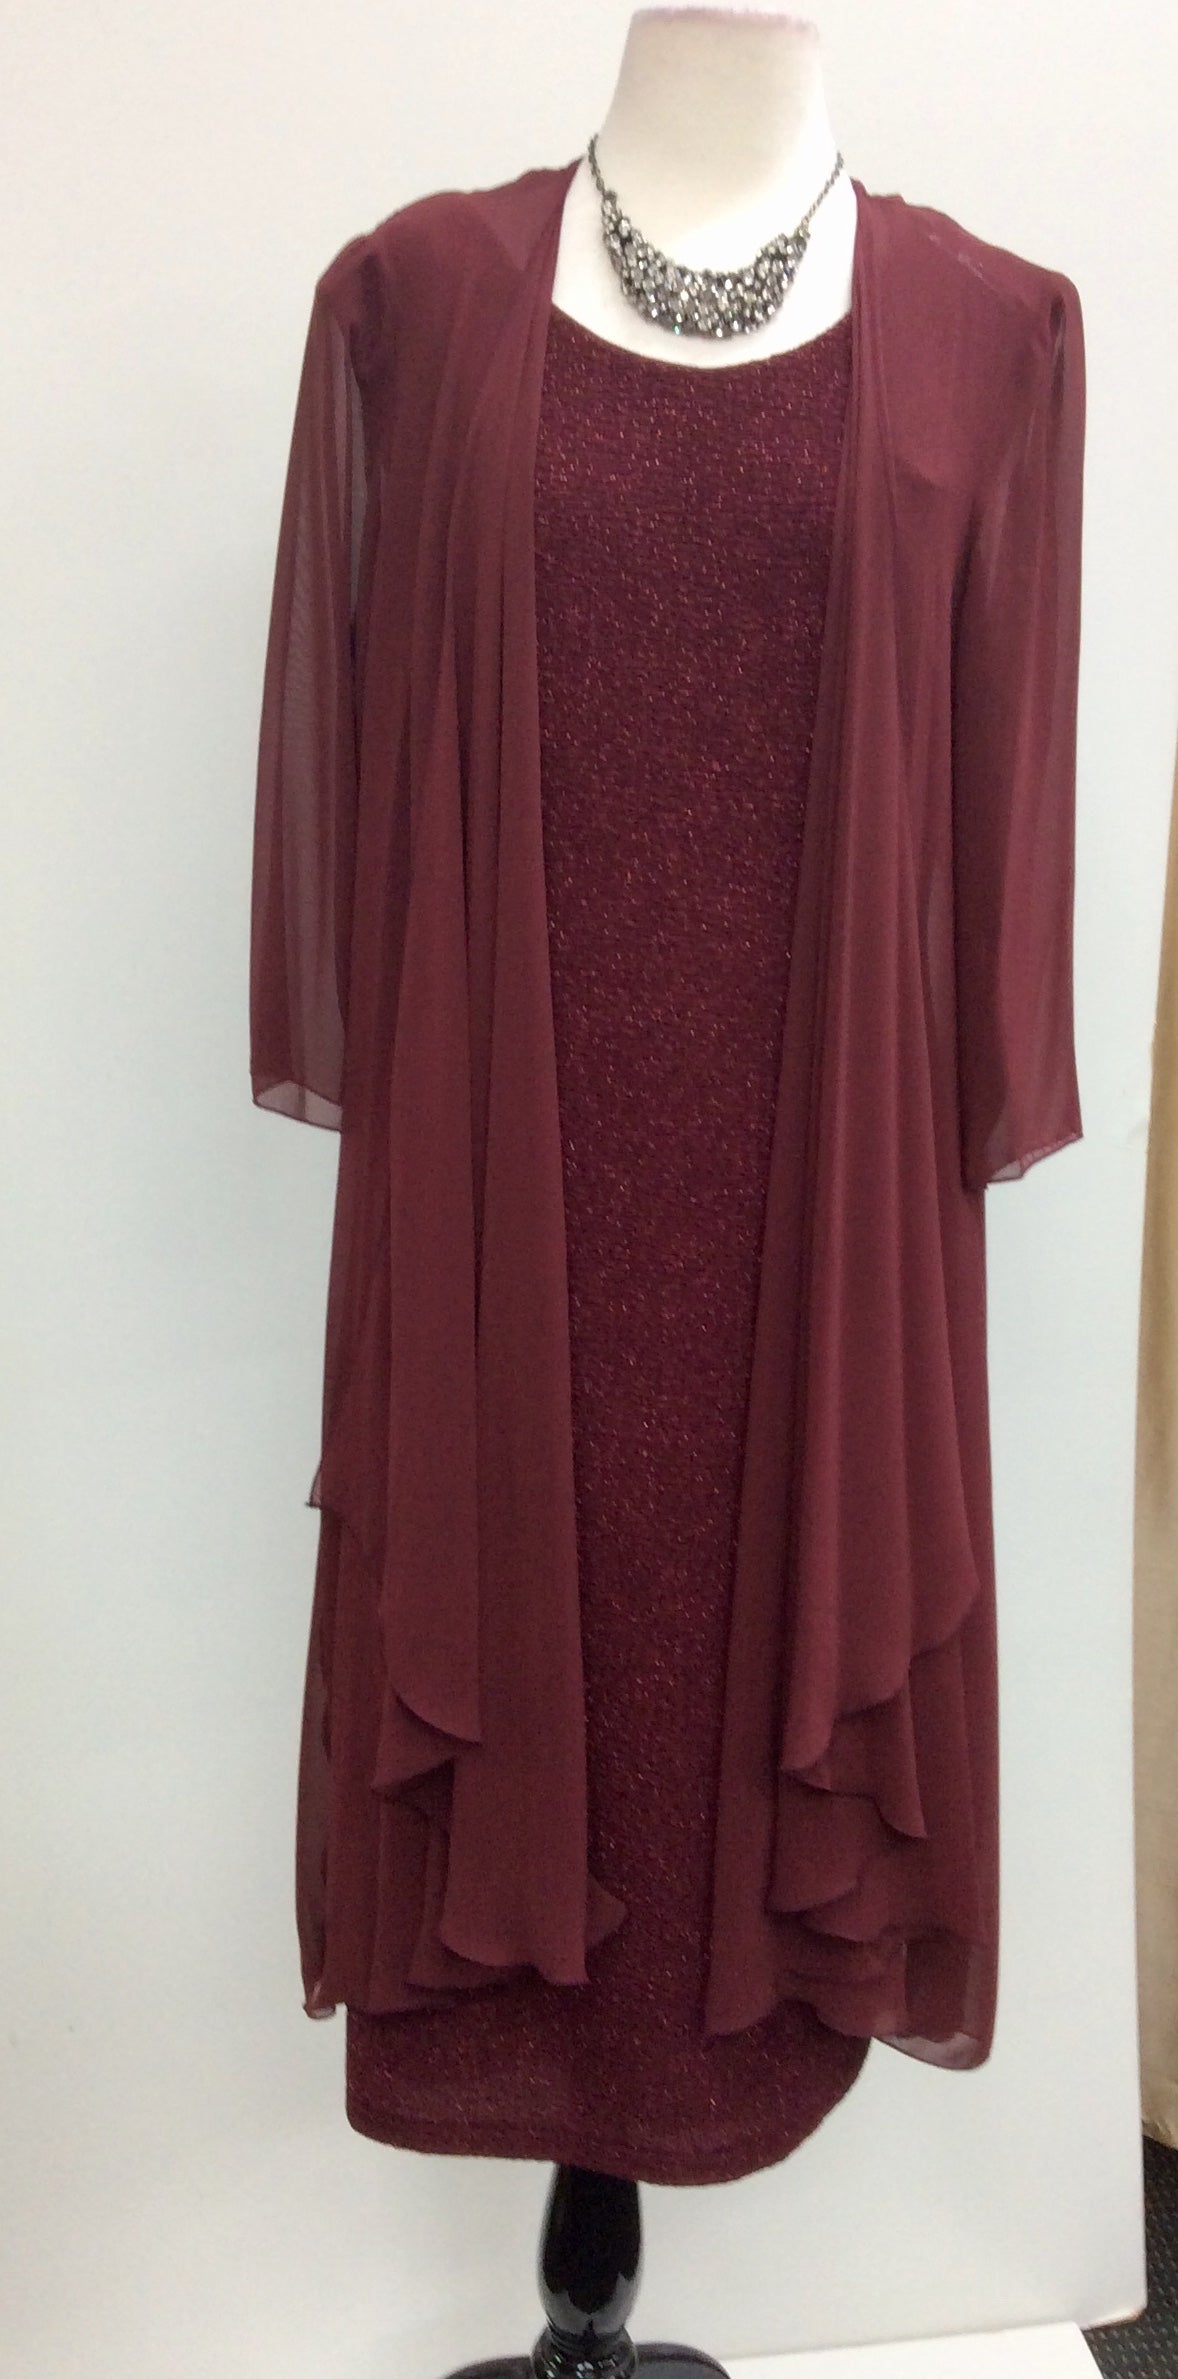 2. Dress and Jacket Sets Catalogue - Isabella Fashions